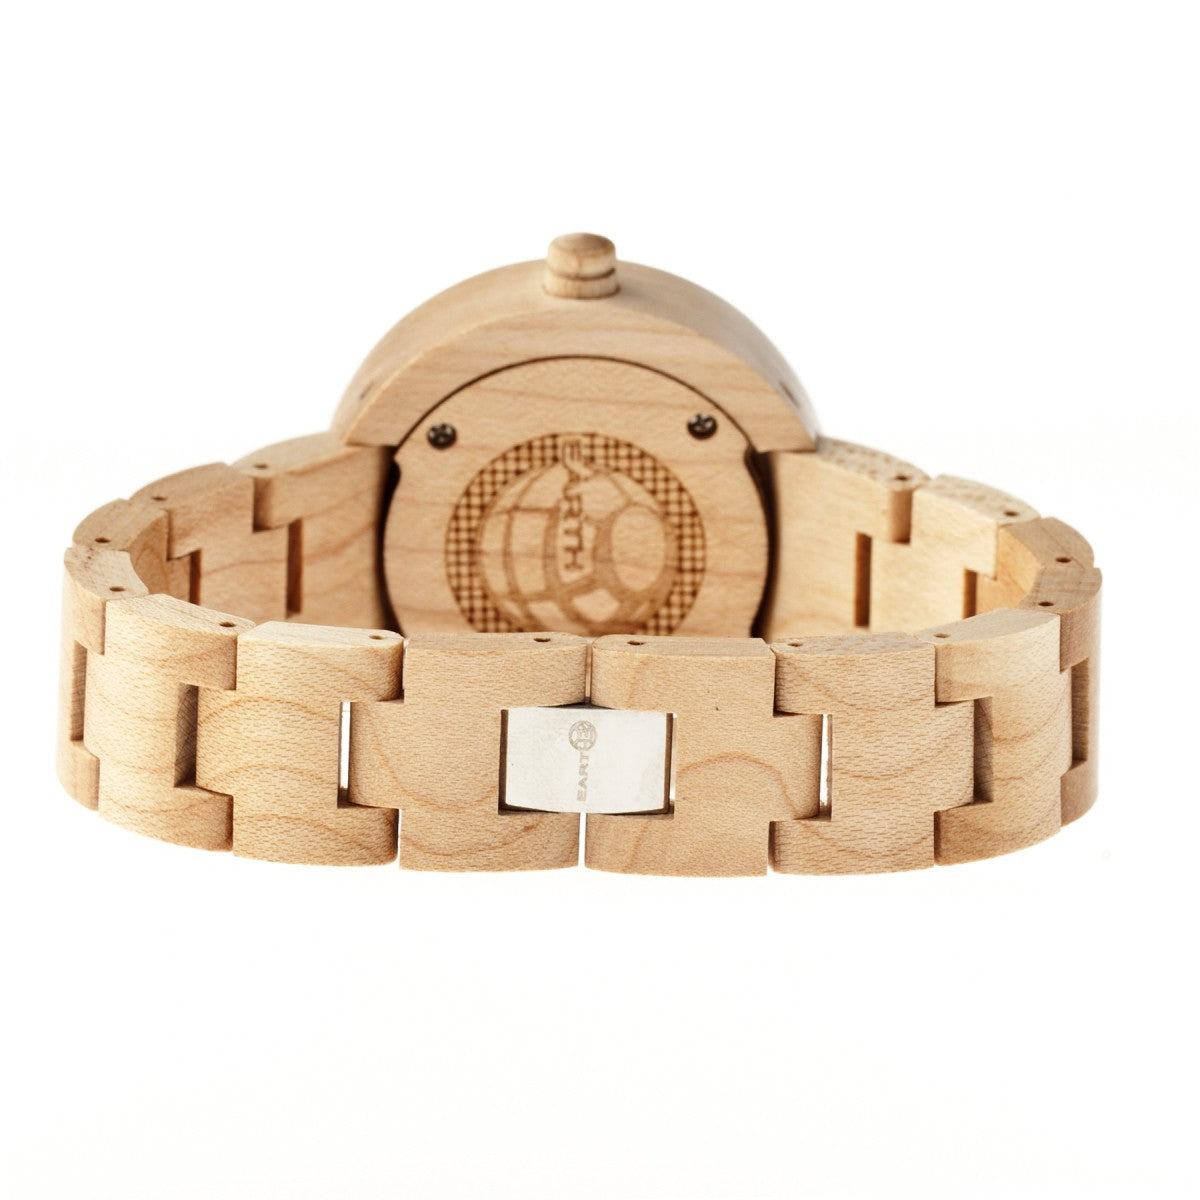 Earth Wood Root Bracelet Watch - Khaki/Tan - ETHEW2501